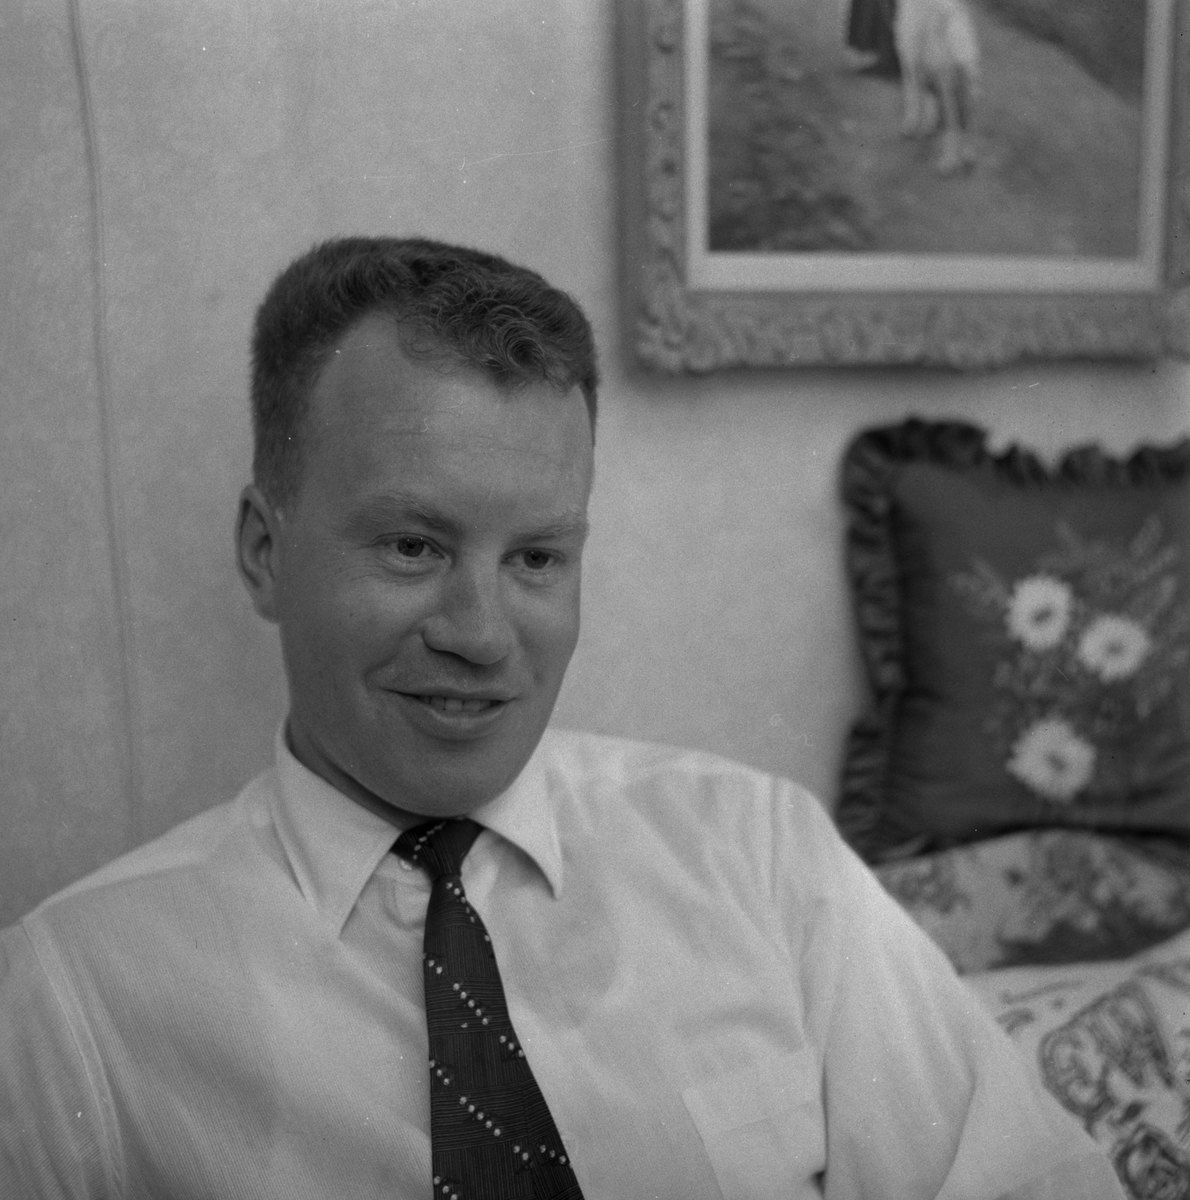 Örebroare hem från USA.
11 juni 1959.